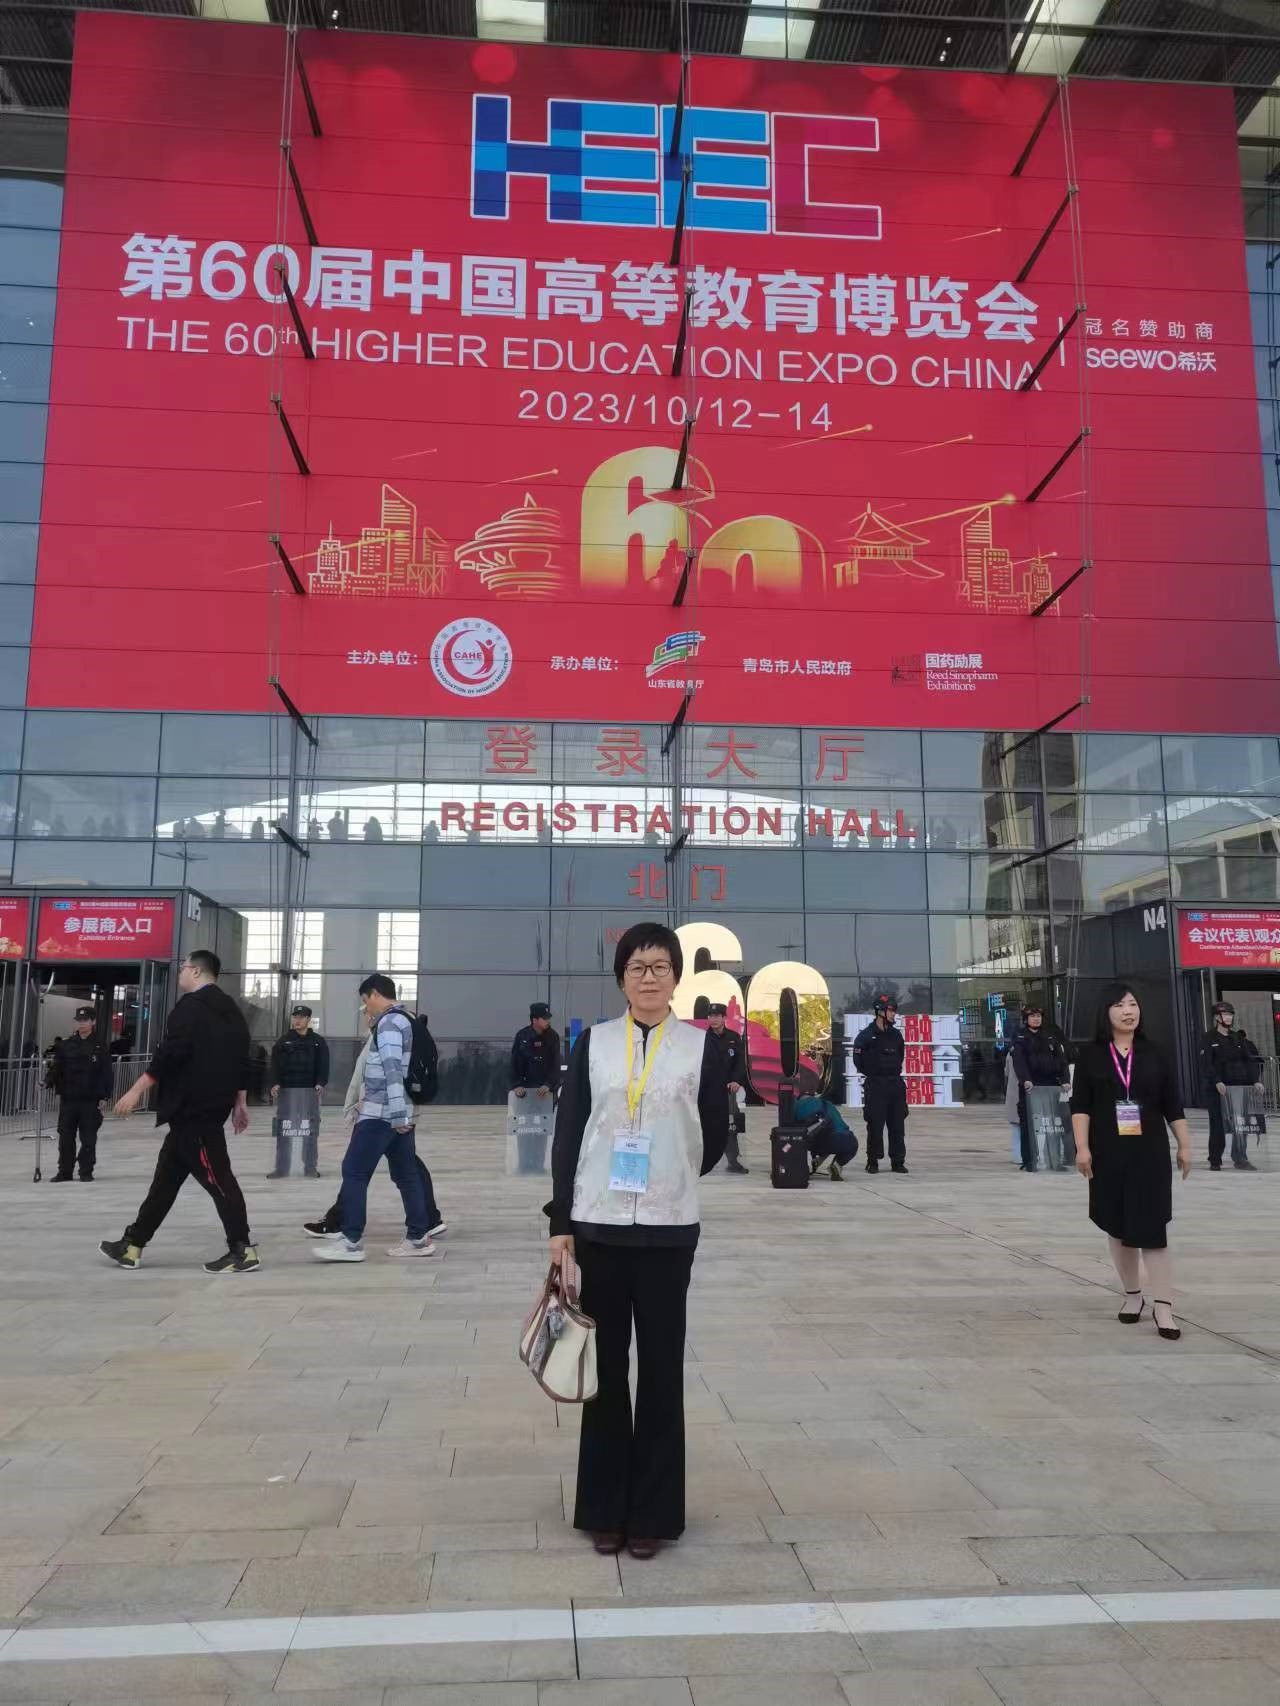 我校教务处组织教师参加第60届中国高等教育博览会 第 2 张